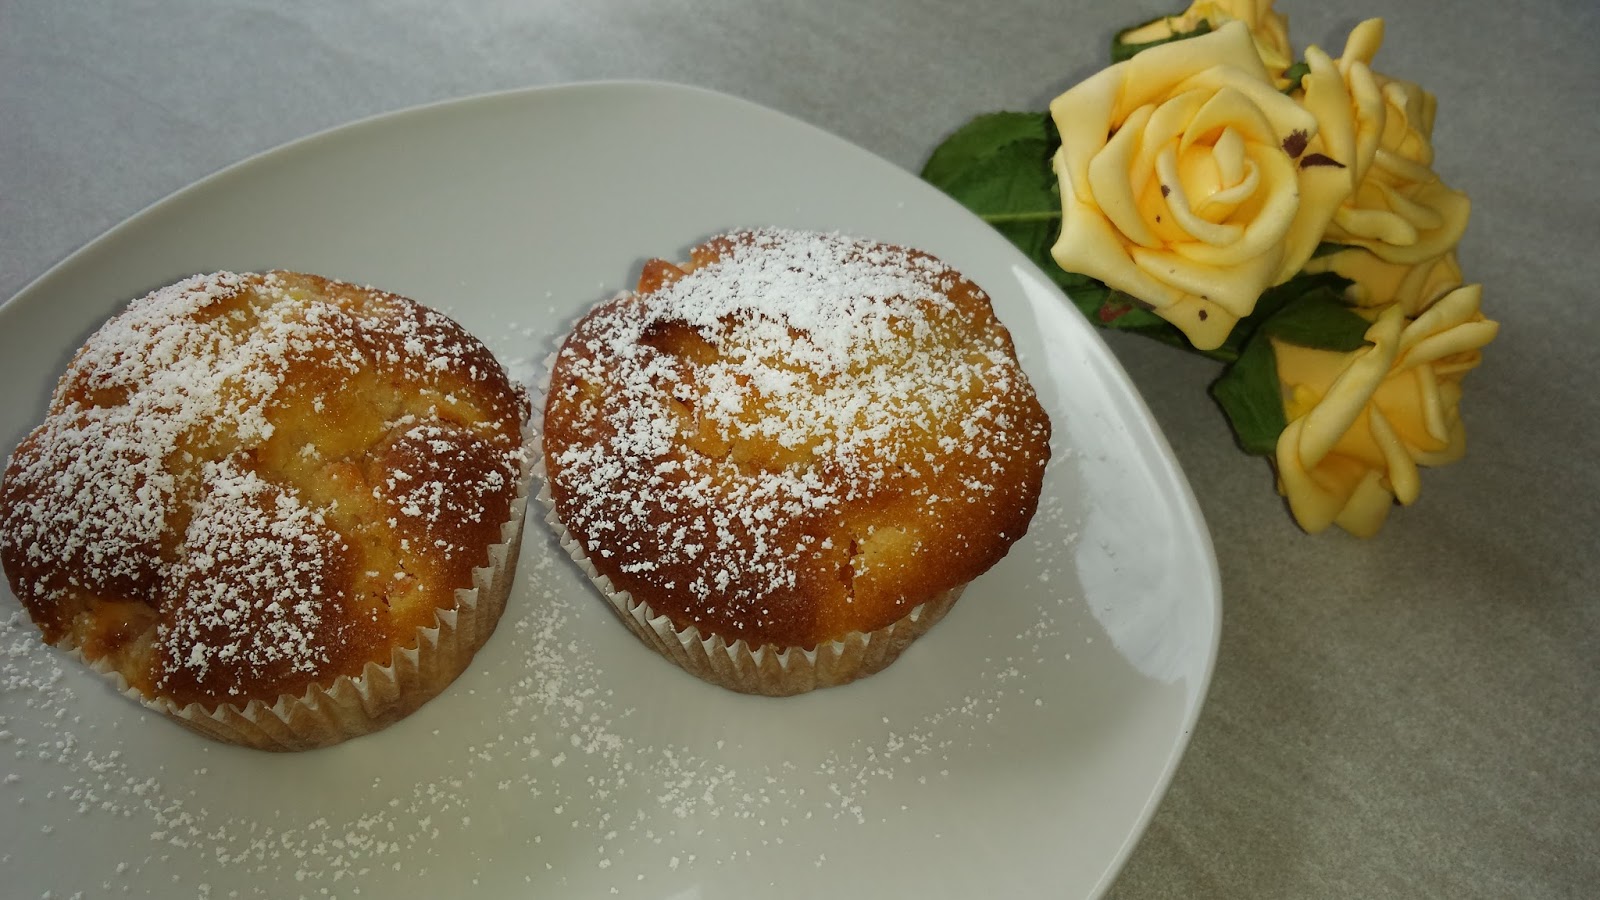 Jasmin zaubert ...: Saftige Aprikosen-Vanille-Muffins